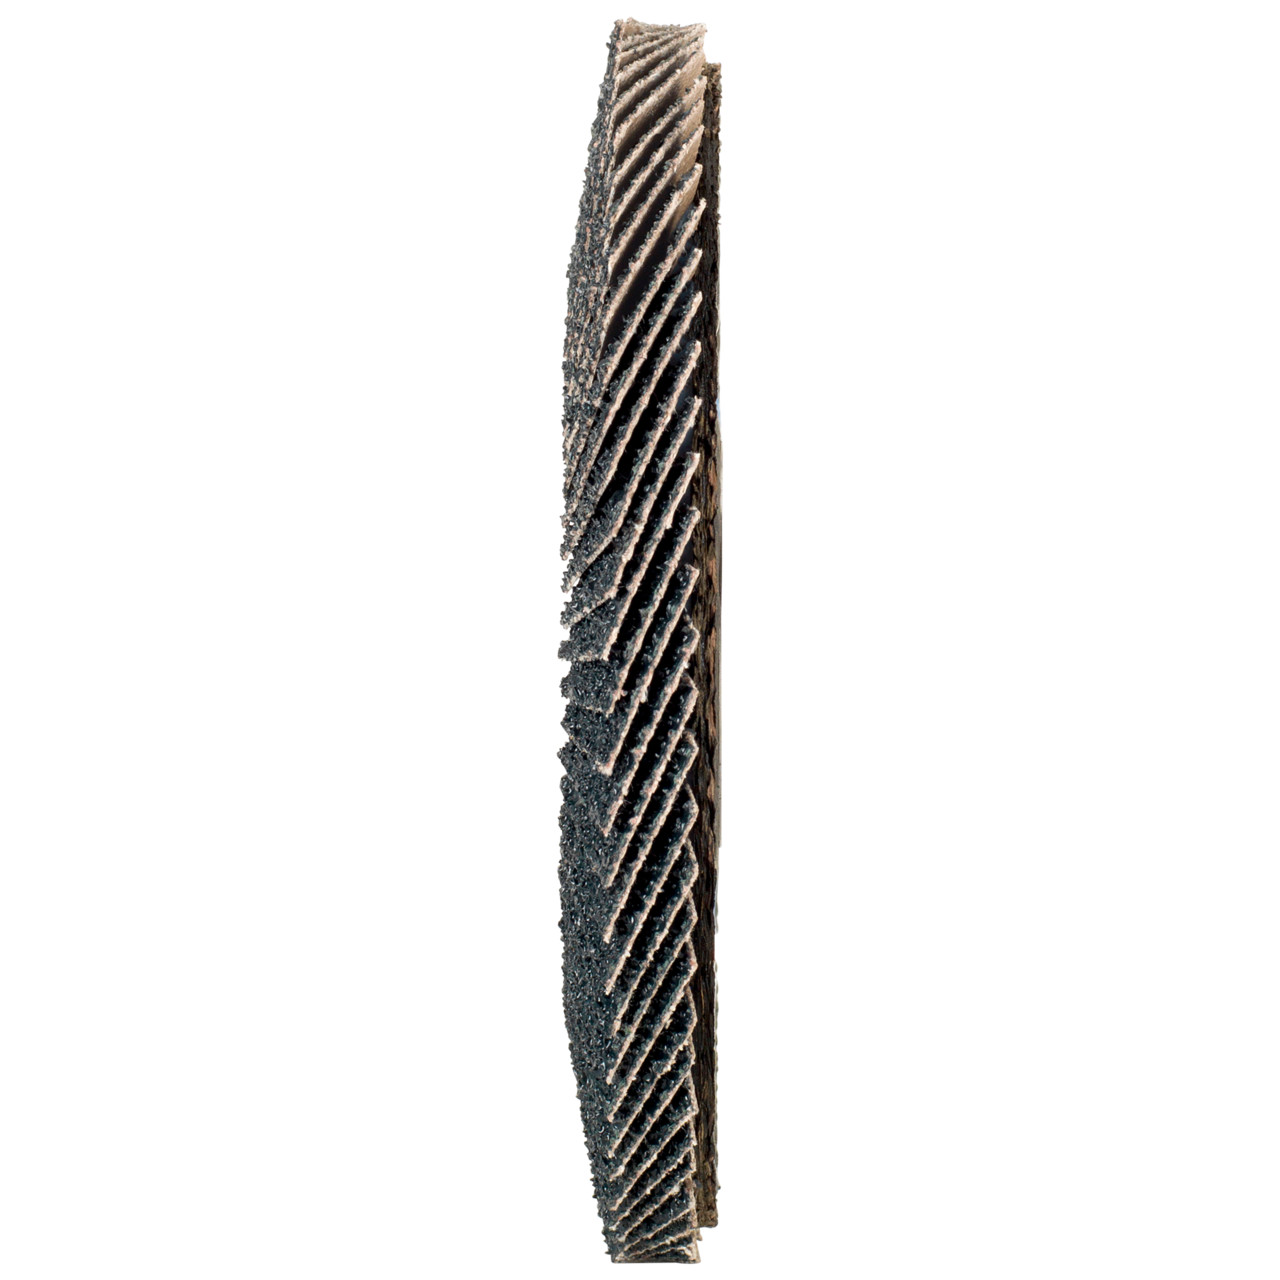 Tyrolit Gekartelde borgring DxH 150x22,2 2in1 voor staal &amp; roestvrij staal, P40, vorm: 27A - offset versie (glasvezeldrager body versie), Art. 519212